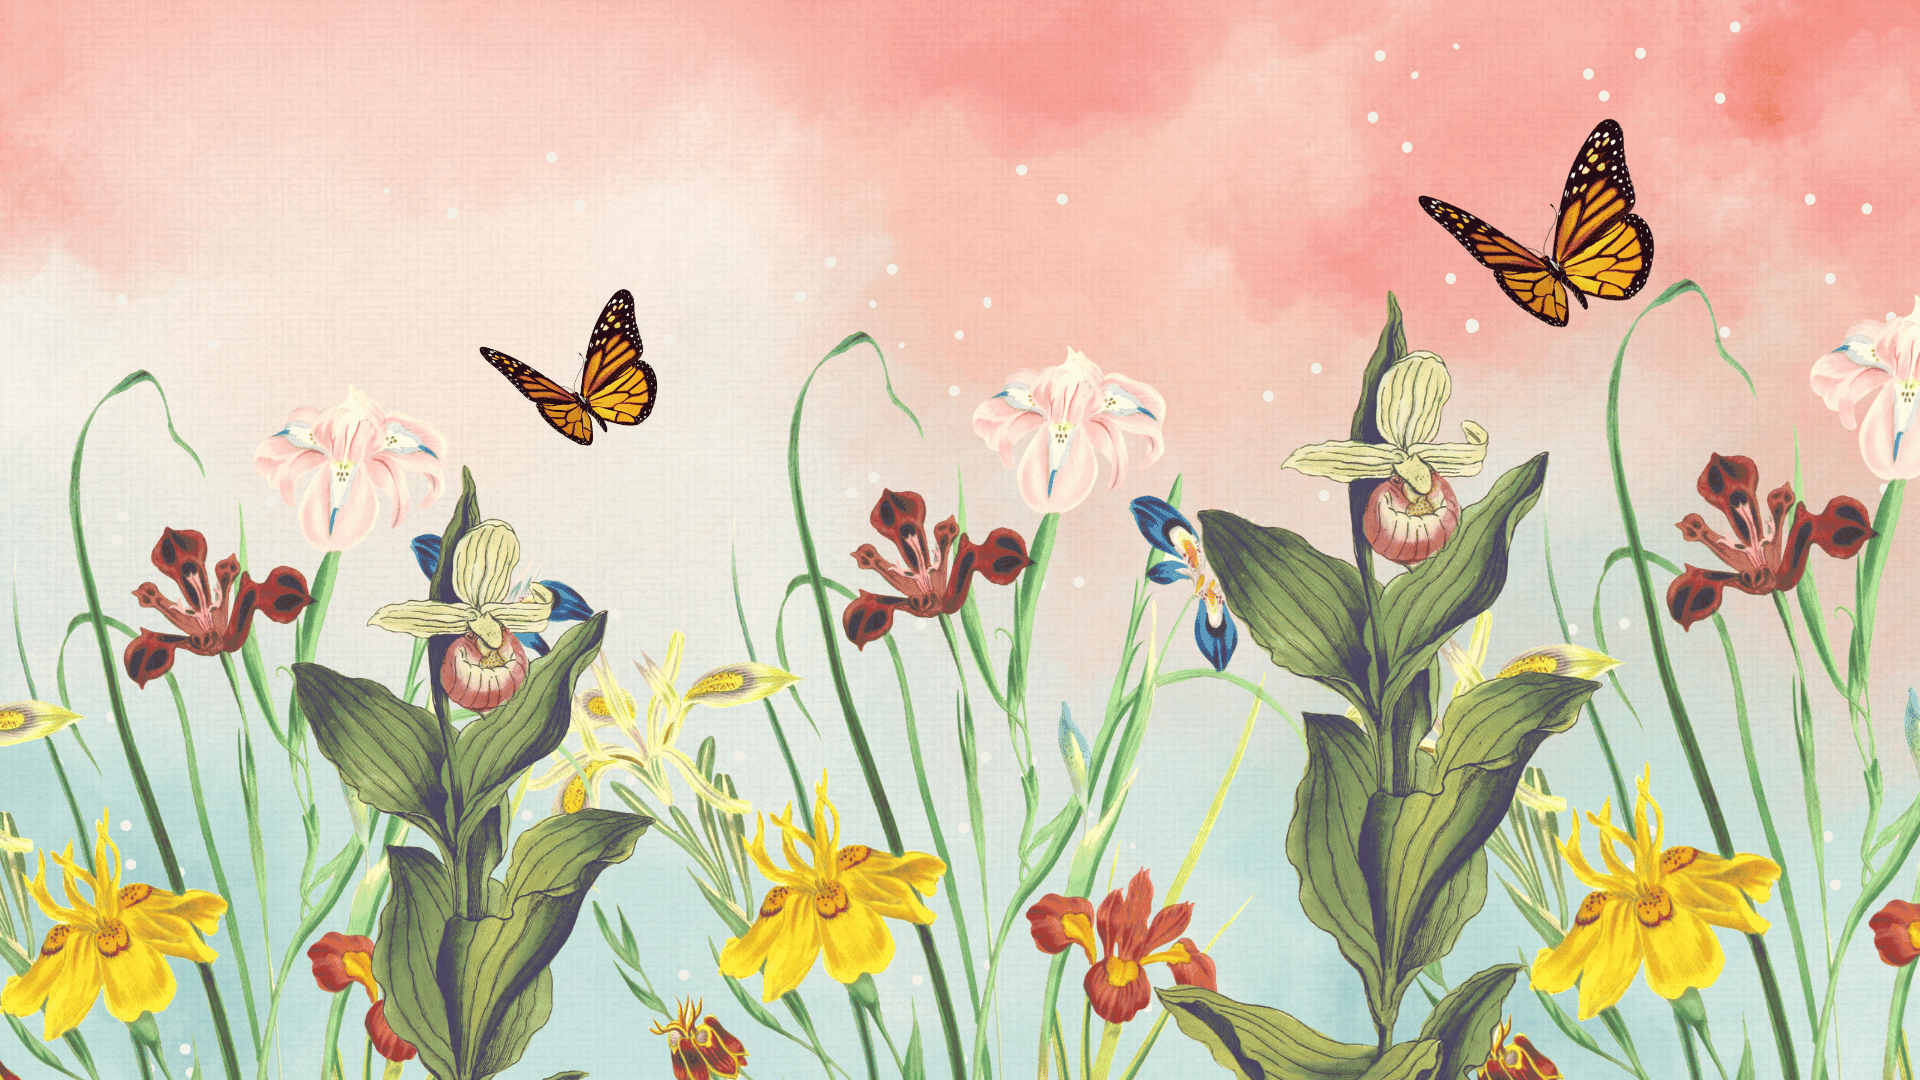 flower wallpaper for desktop background